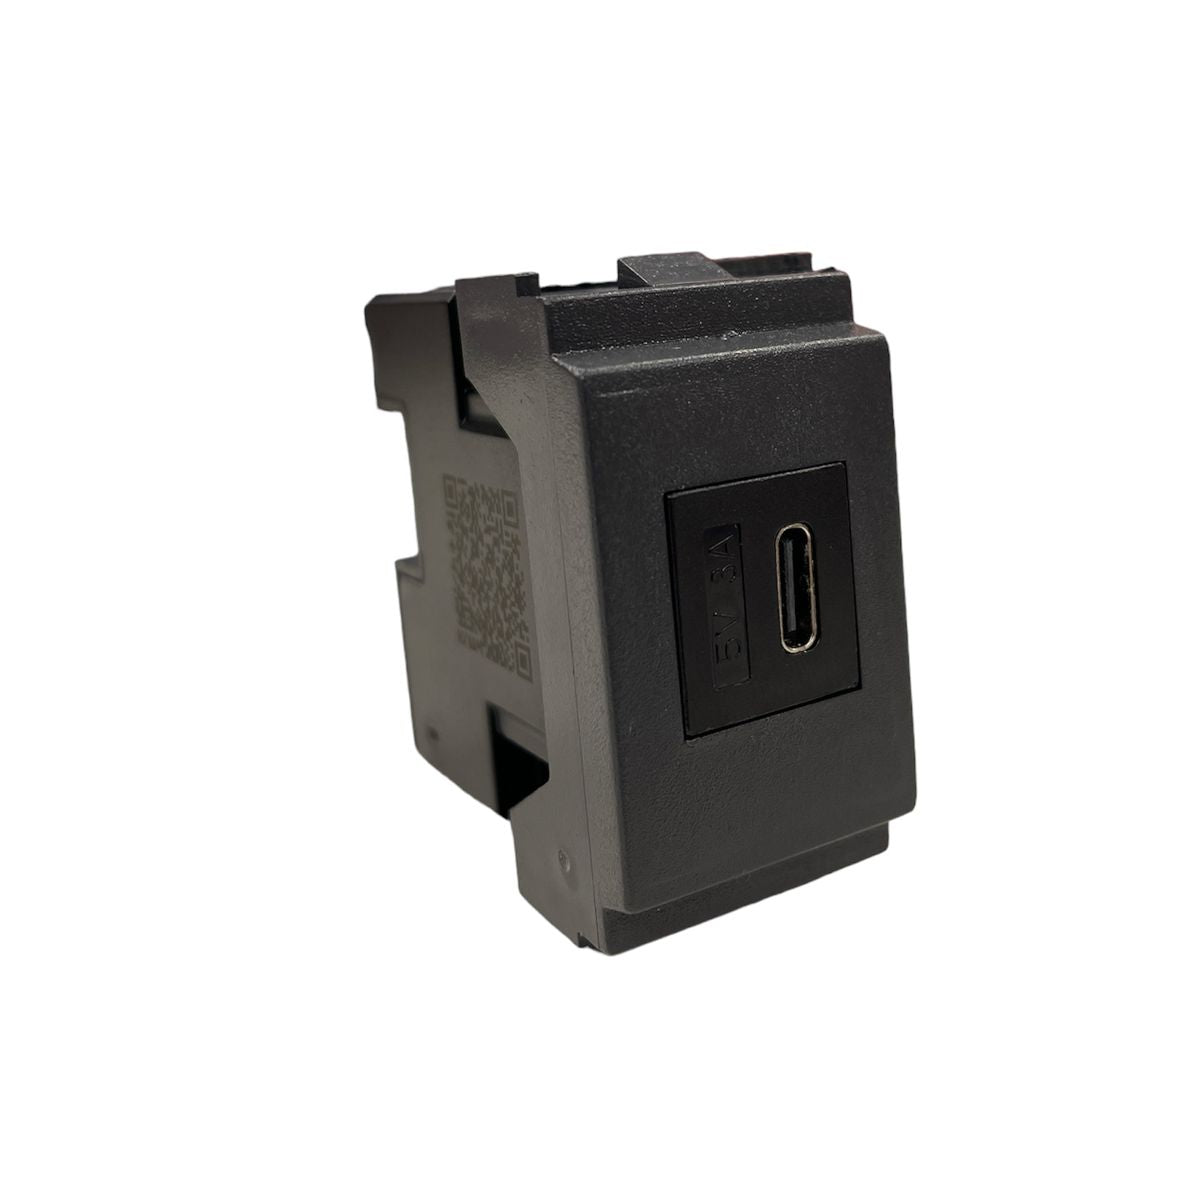 Fanton caricatore presa USB 5V 2,1A muro compatibile serie Vimar Idea  grigia ner